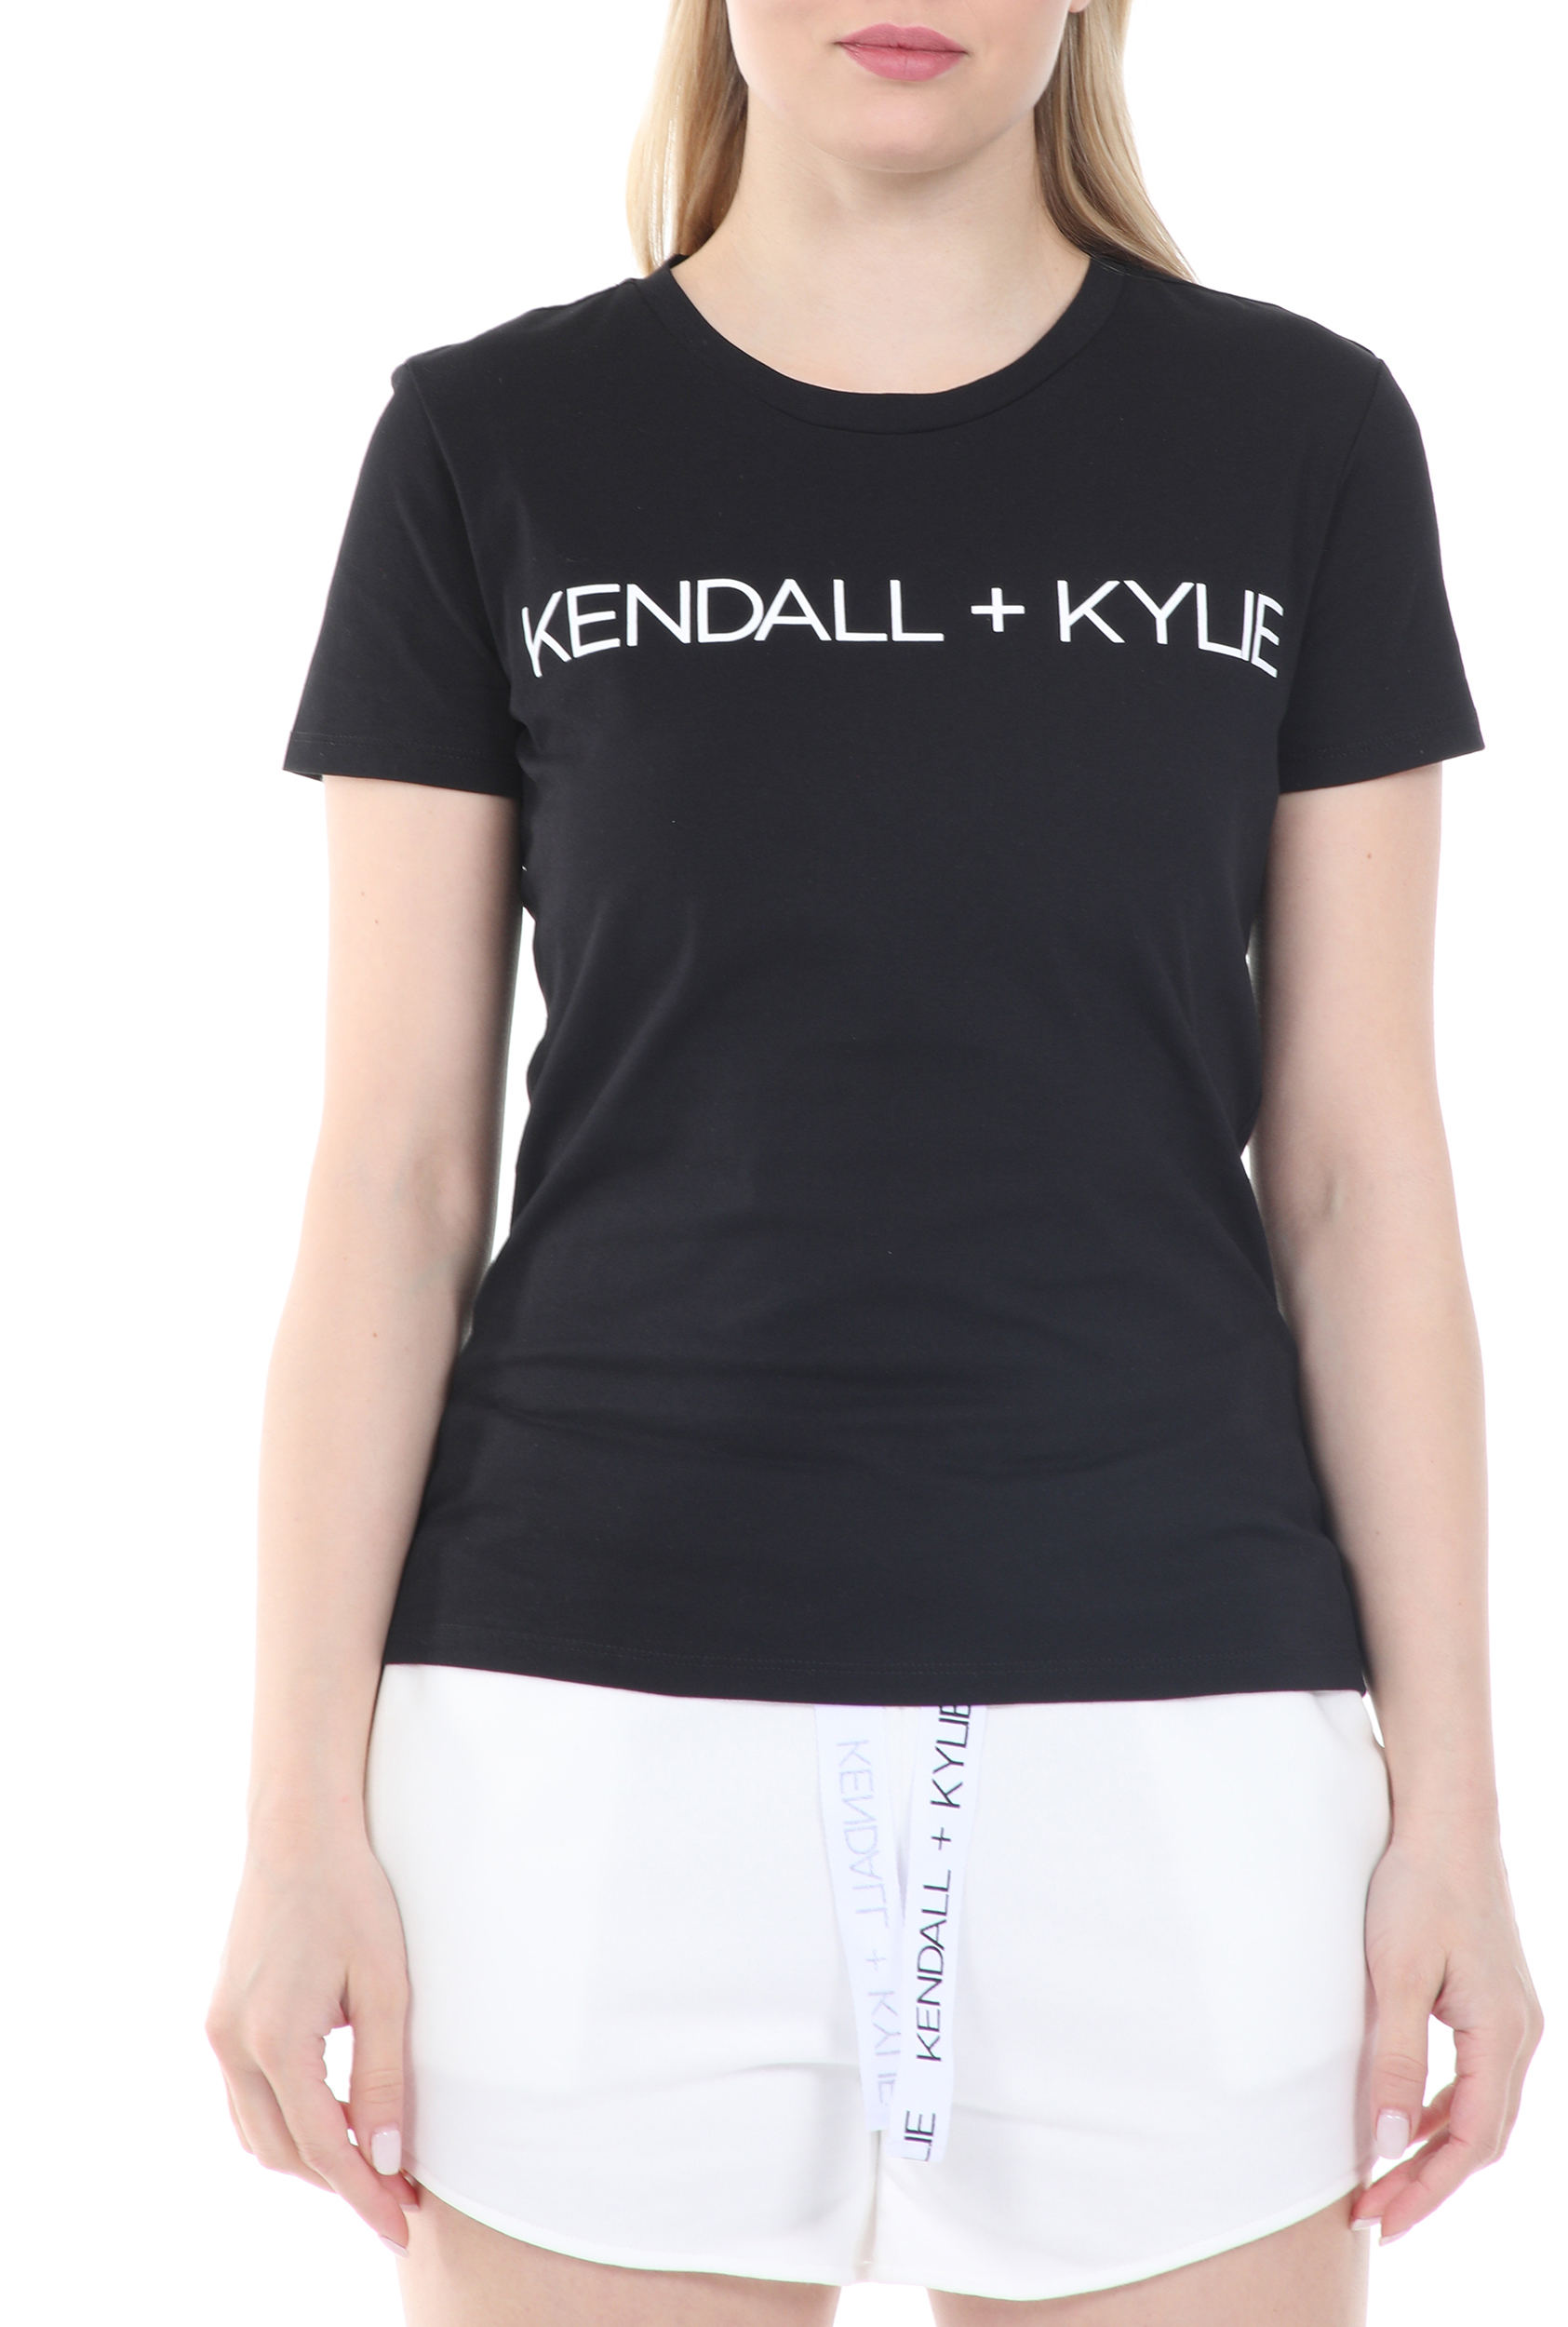 Γυναικεία/Ρούχα/Μπλούζες/Κοντομάνικες KENDALL + KYLIE - Γυναικείο t-shirt KENDALL + KYLIE BASIC LOGO μαύρο